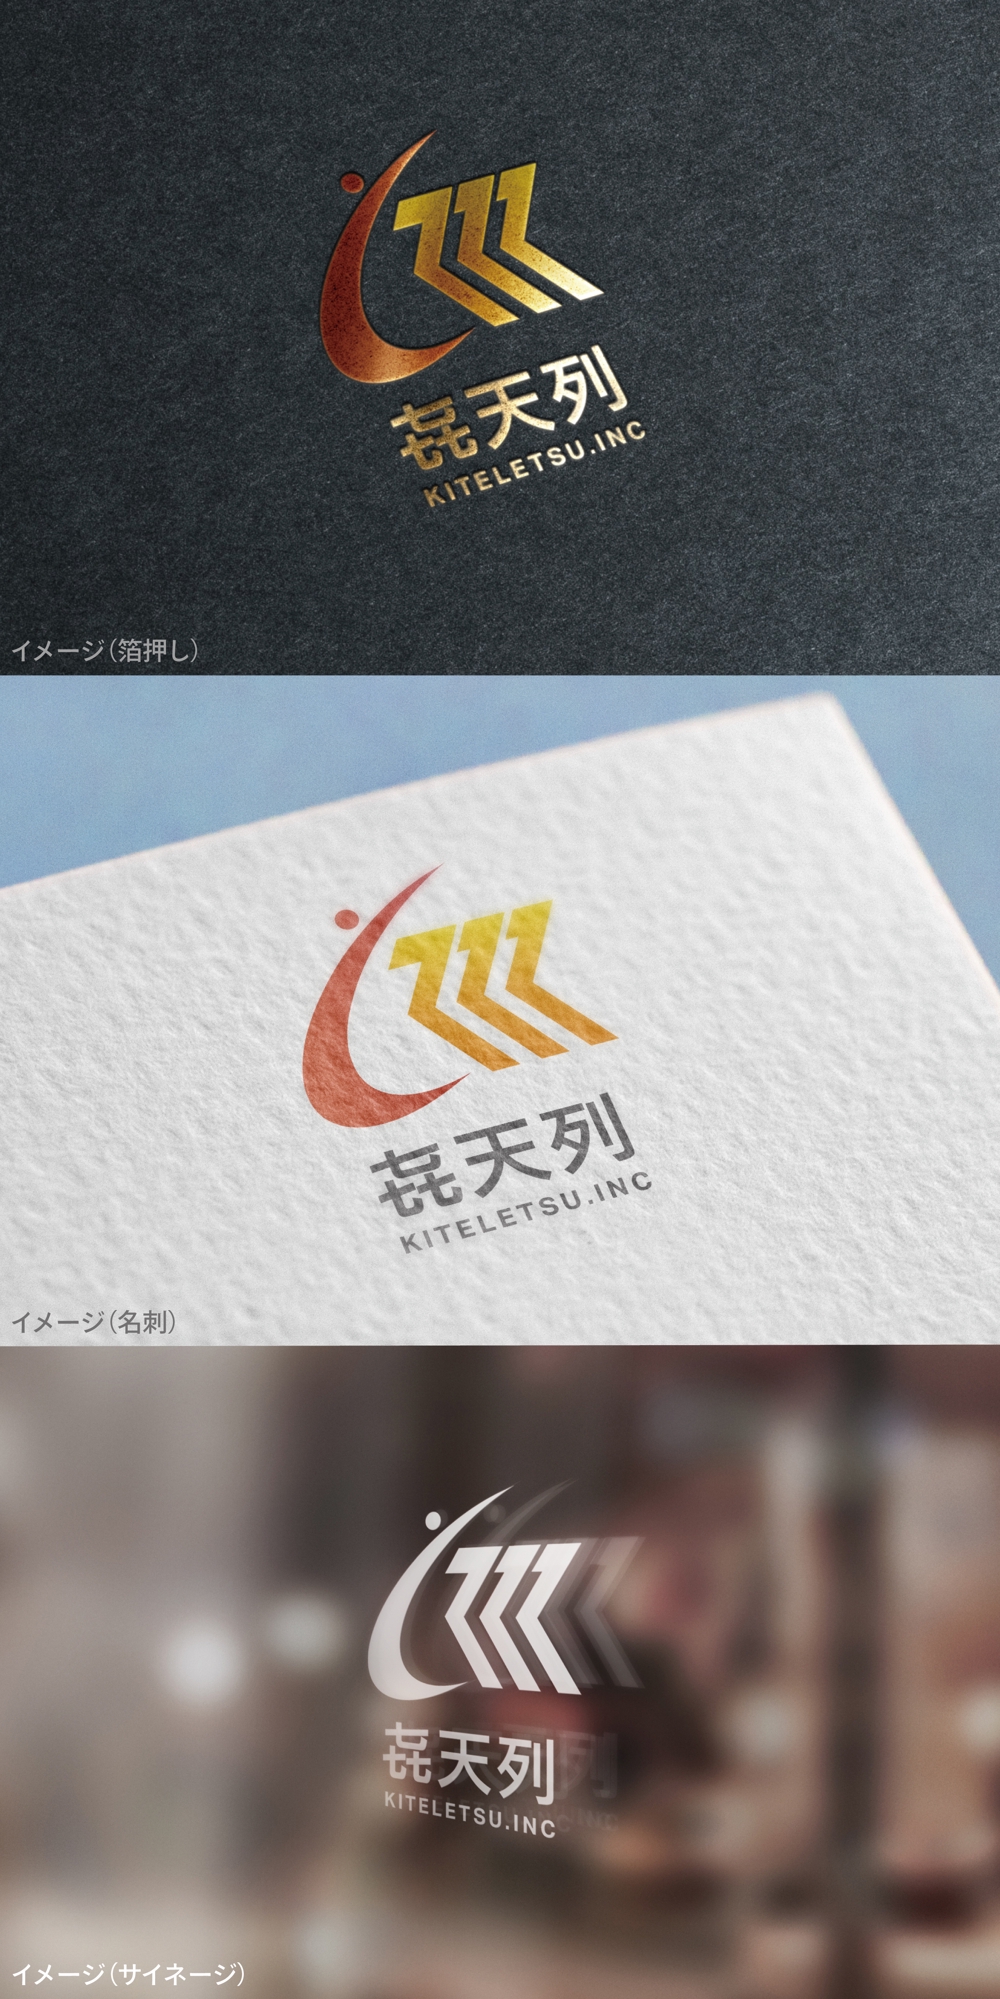 㐂天列_logo01_01.jpg